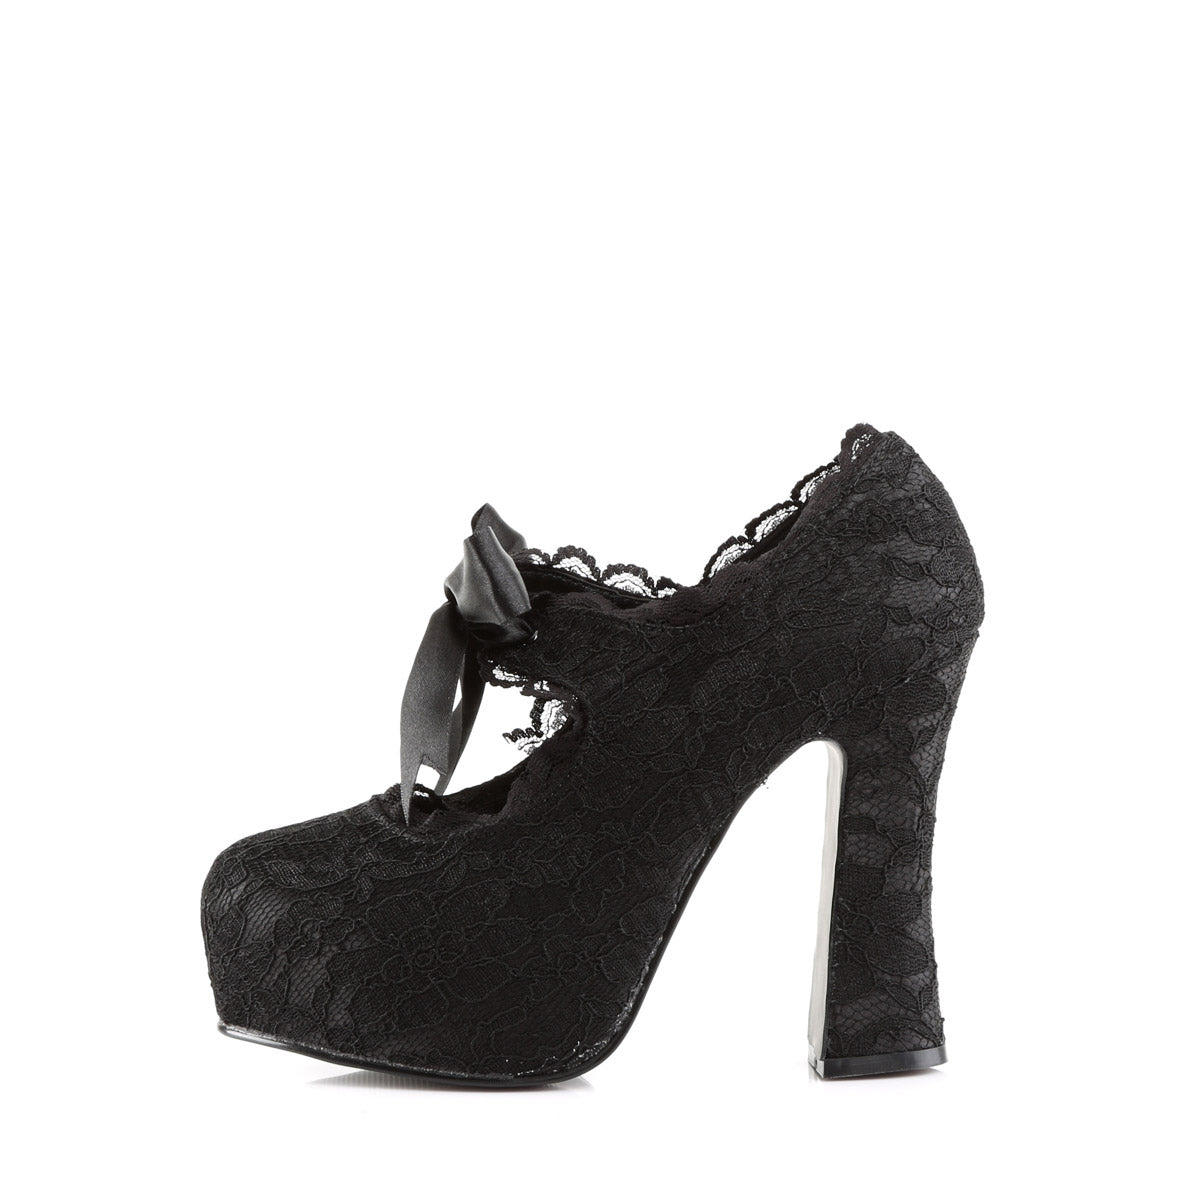 Pleaser Bordello Teeze-06 - Black Pu in Sexy Heels & Platforms - $59.83